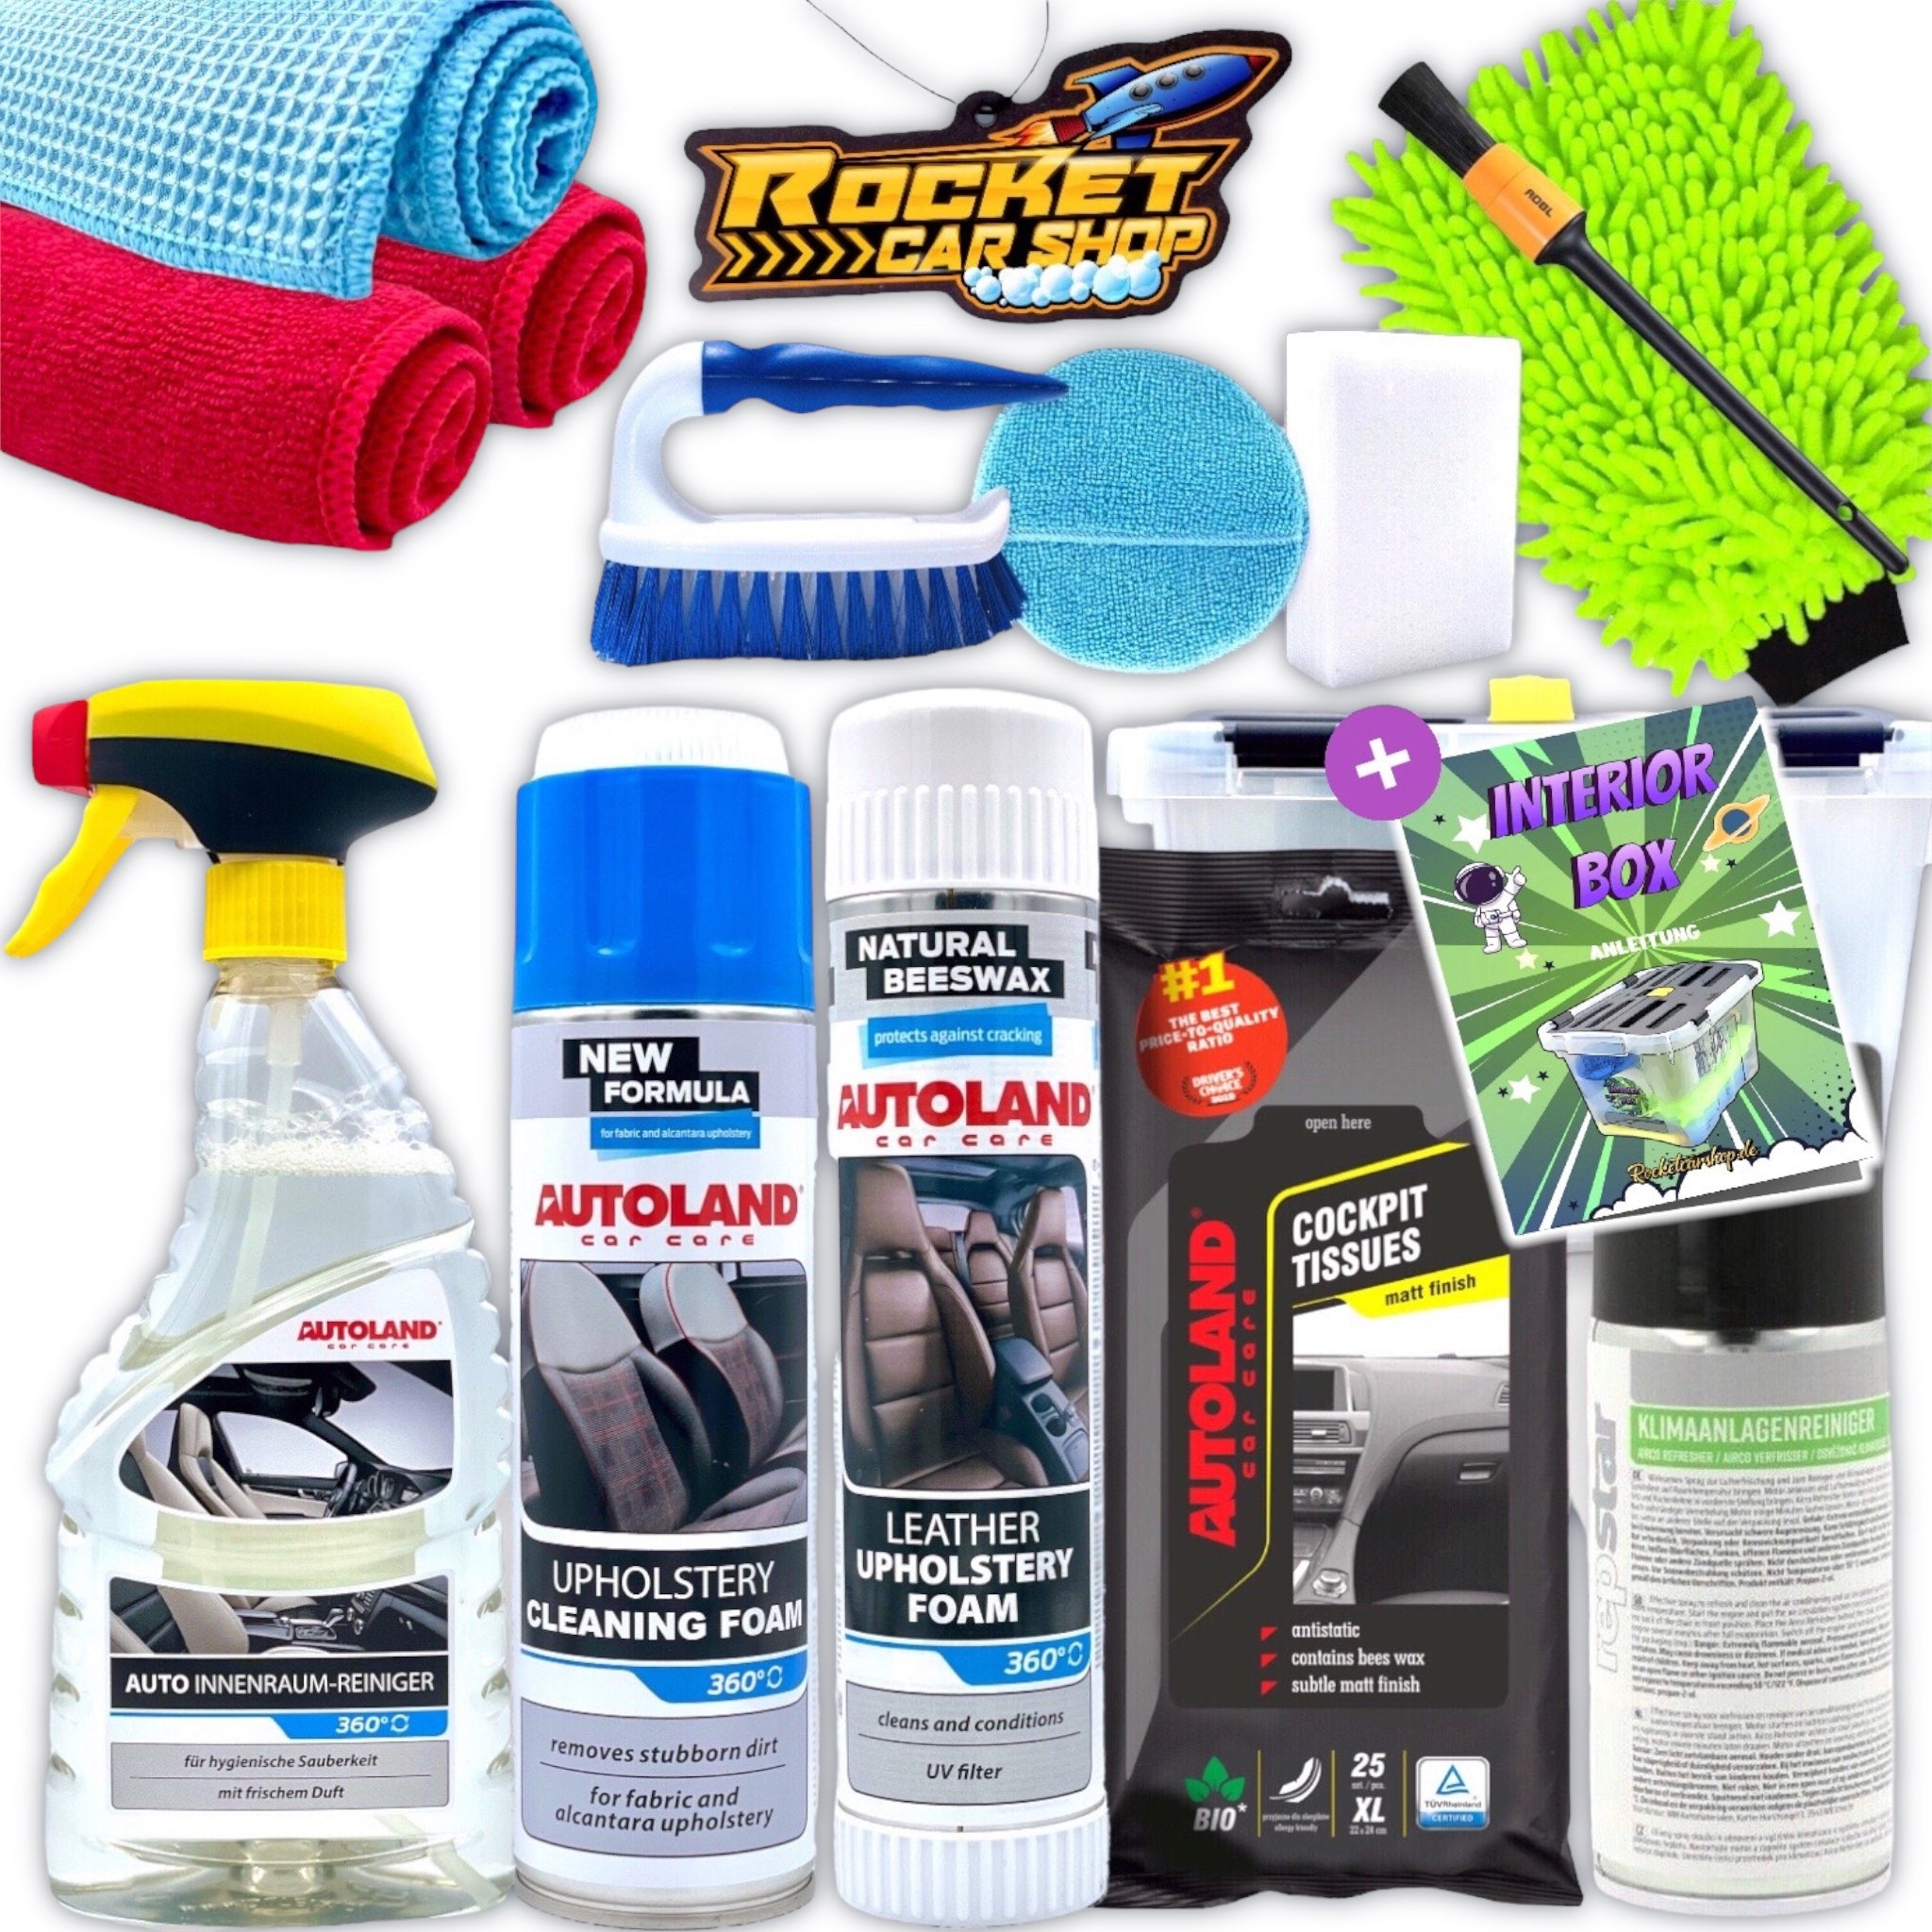 autopflege set innenraum interior kit fahrzeug innenraumreiniger autopflege set putzset für pkw geschenkset geschenkidee für männer